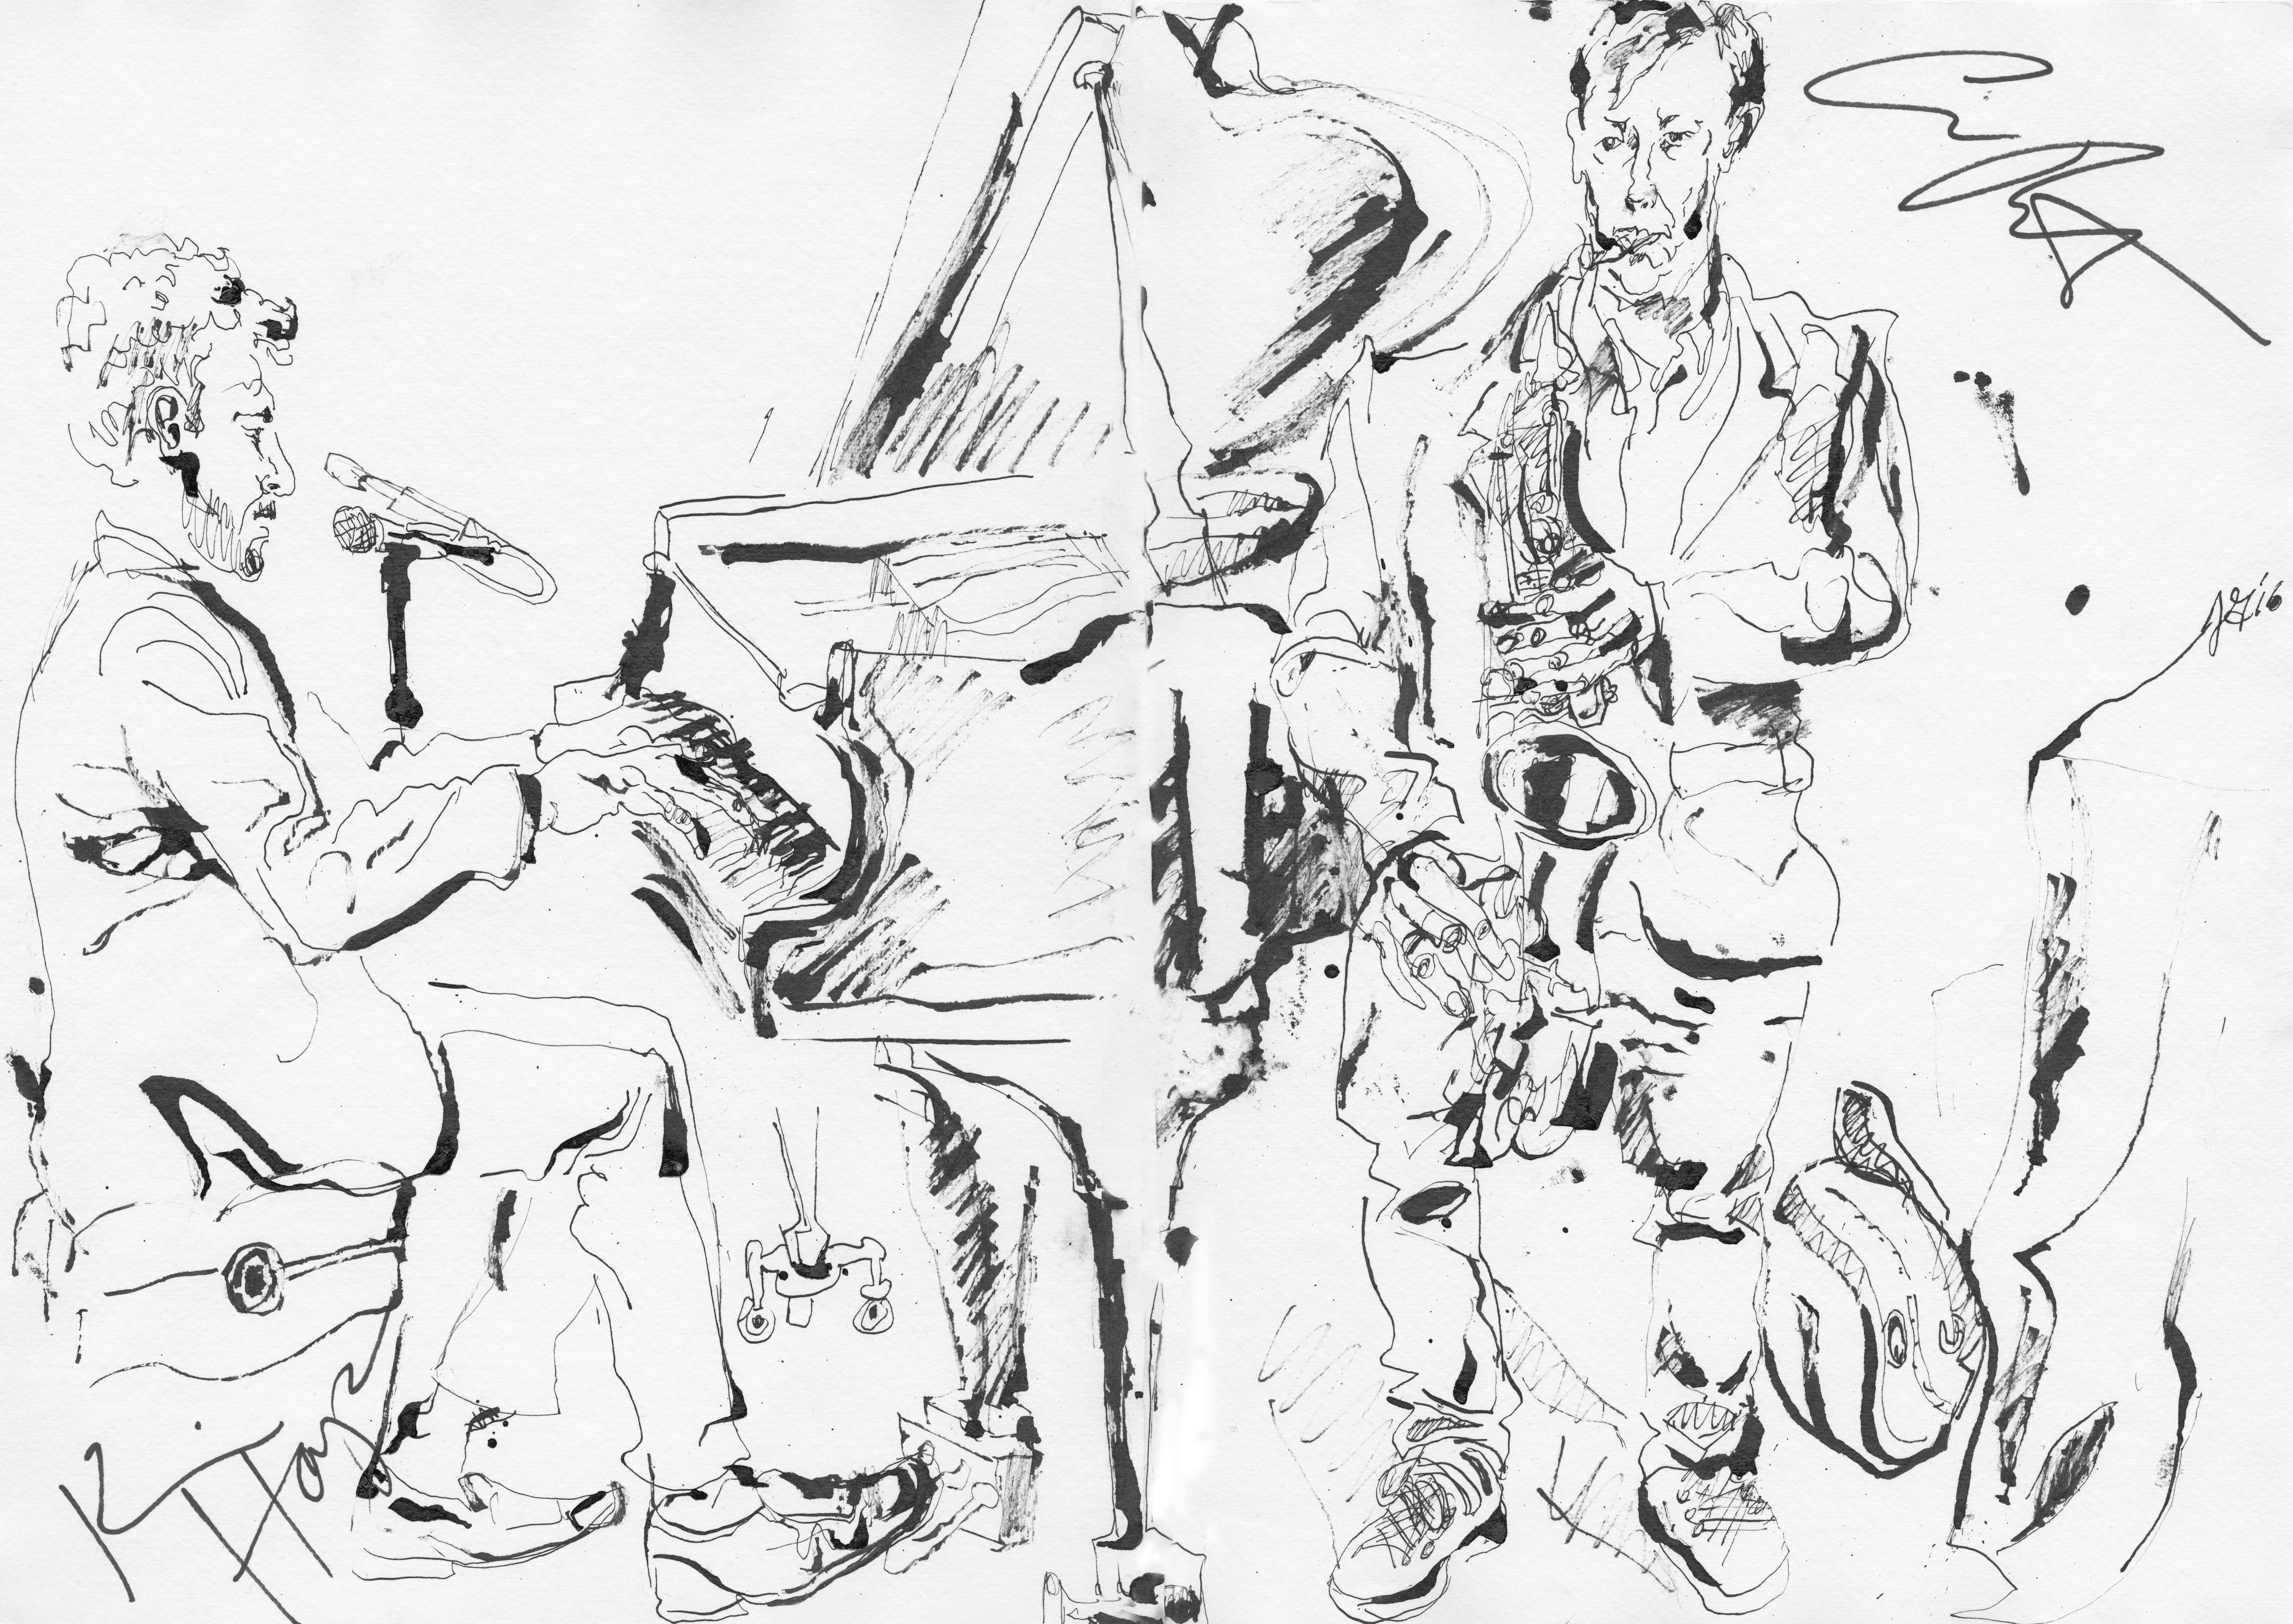 Chris Potter, Kevin Hays at Kitano - Ink on Paper - Original Sketch